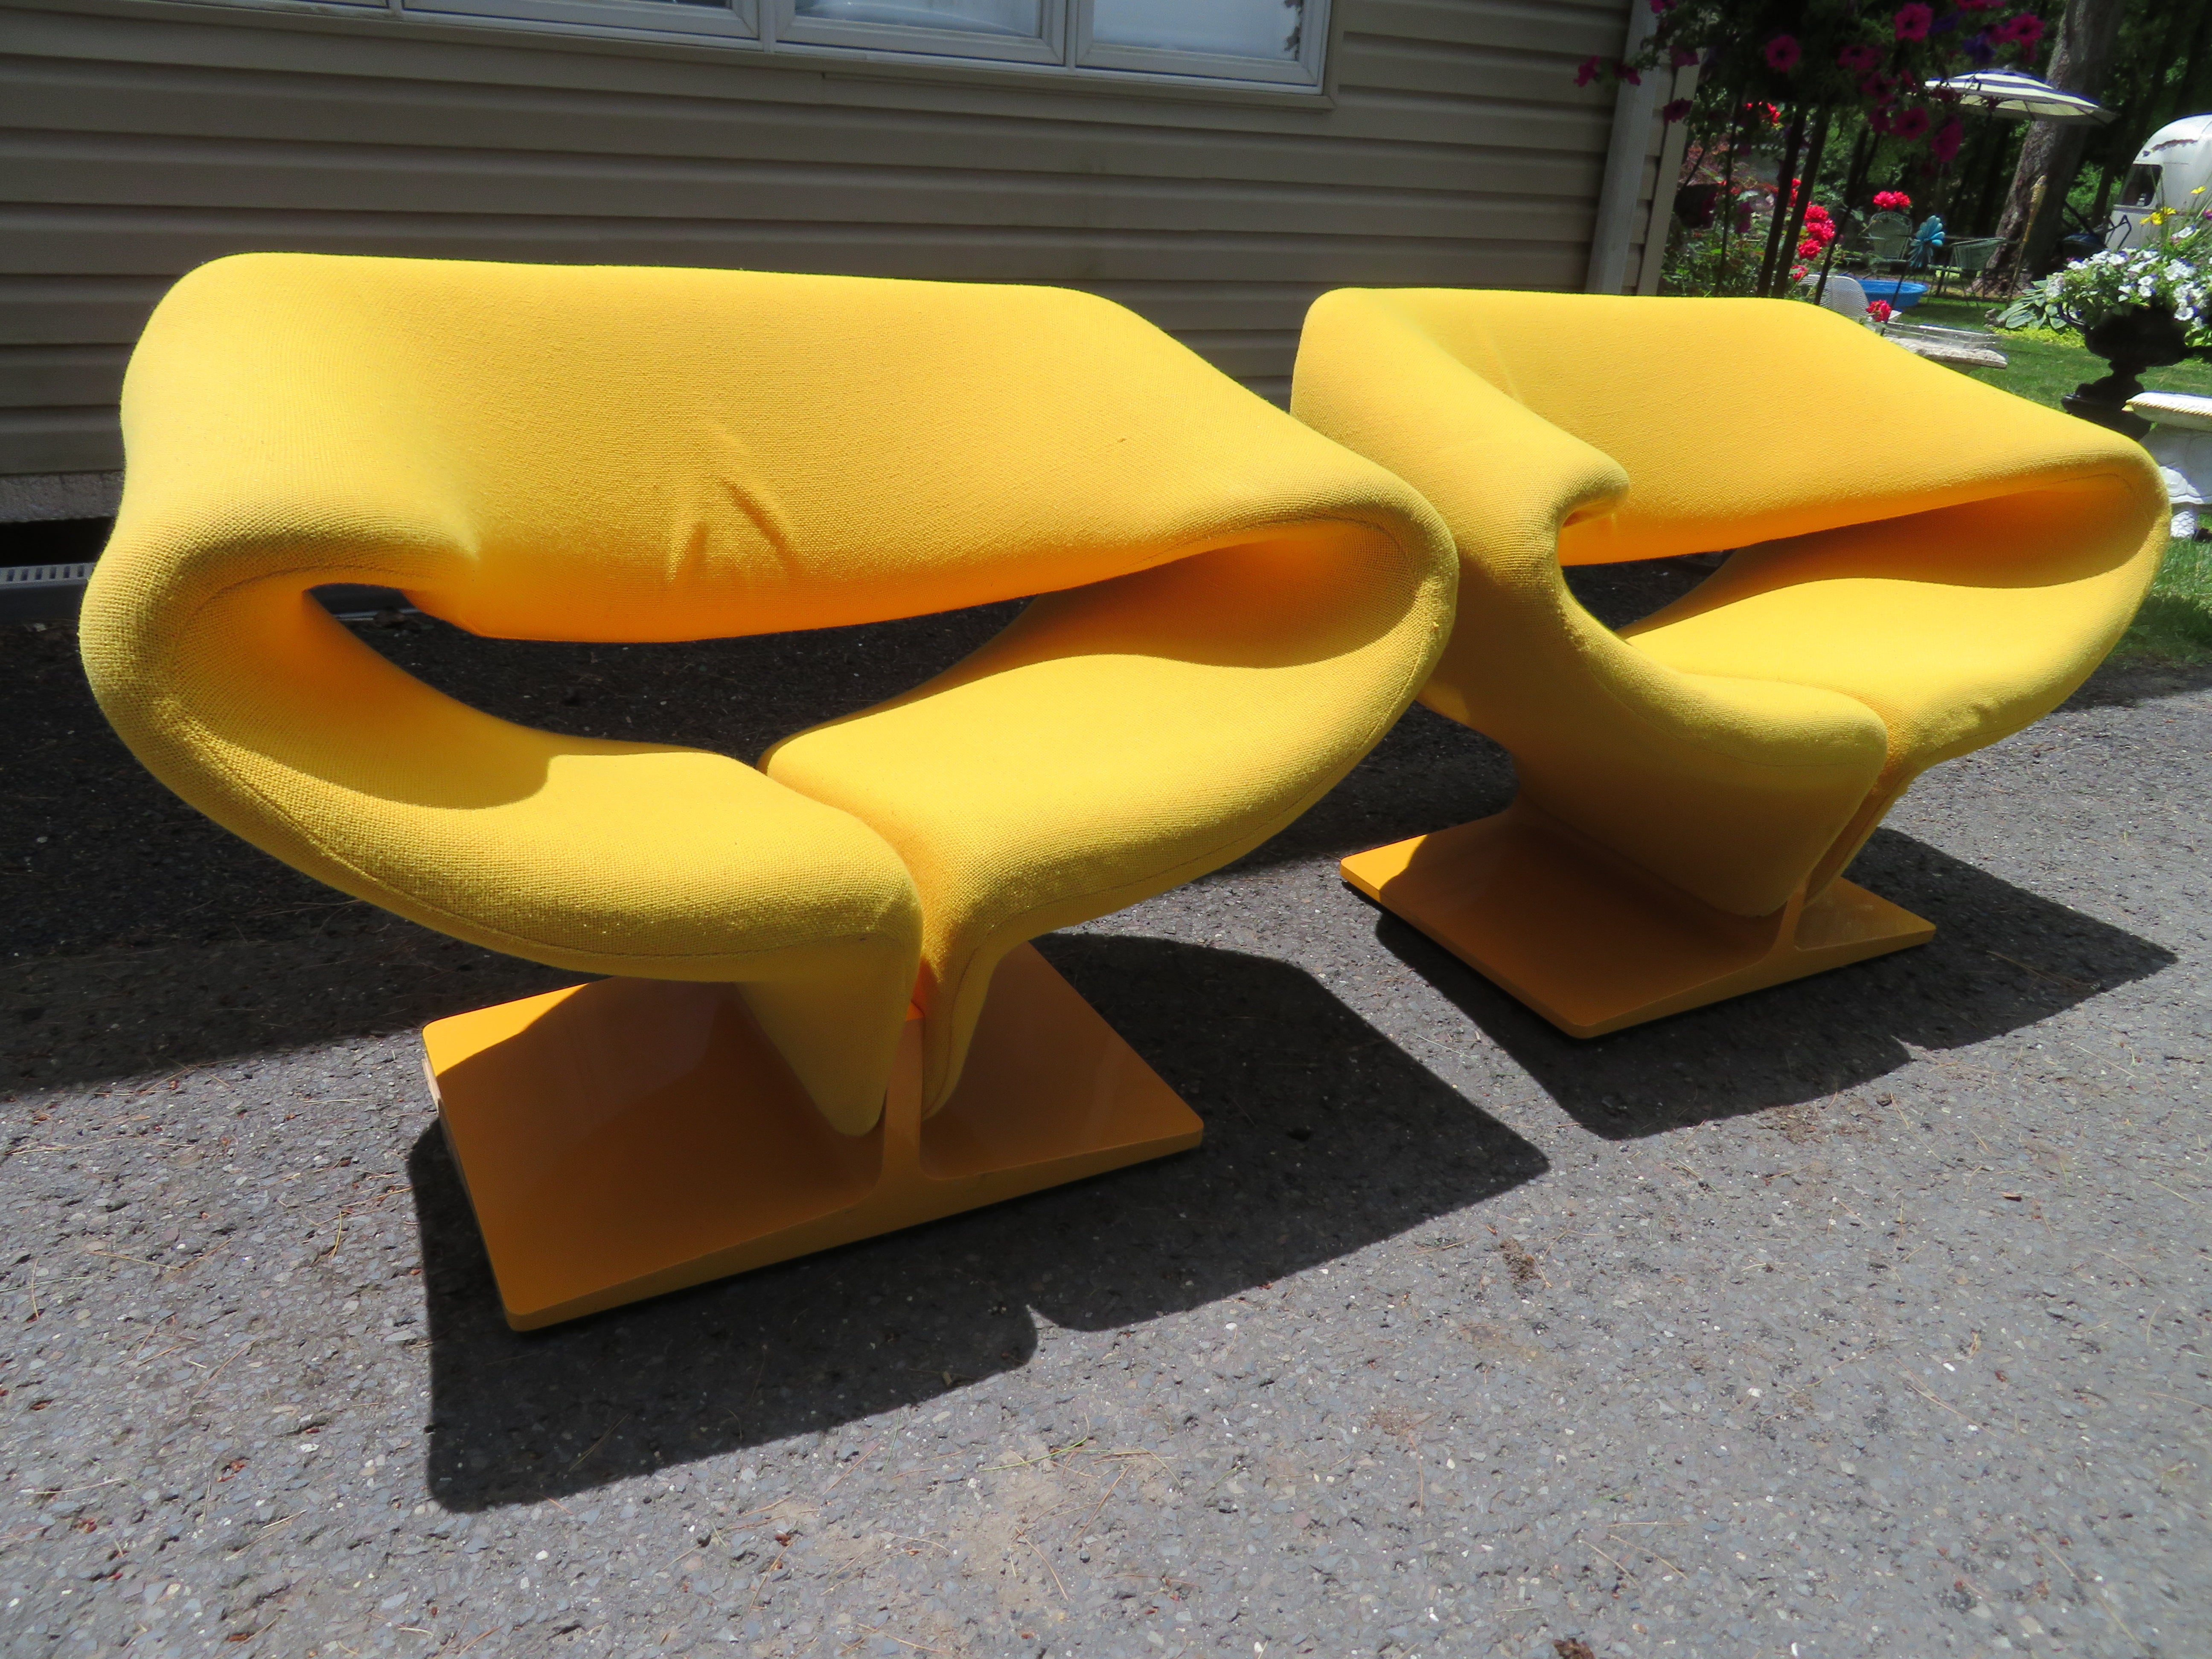 Wunderschönes Paar Vintage-Stühle von Pierre Paulin mit Bändern. Hergestellt von Artifort und vertrieben von Turner Ltd. in den späten 1960er Jahren. Dieses Paar behält seinen ursprünglichen gelben gewebten Stoff in sehr gutem Zustand. Die gelb